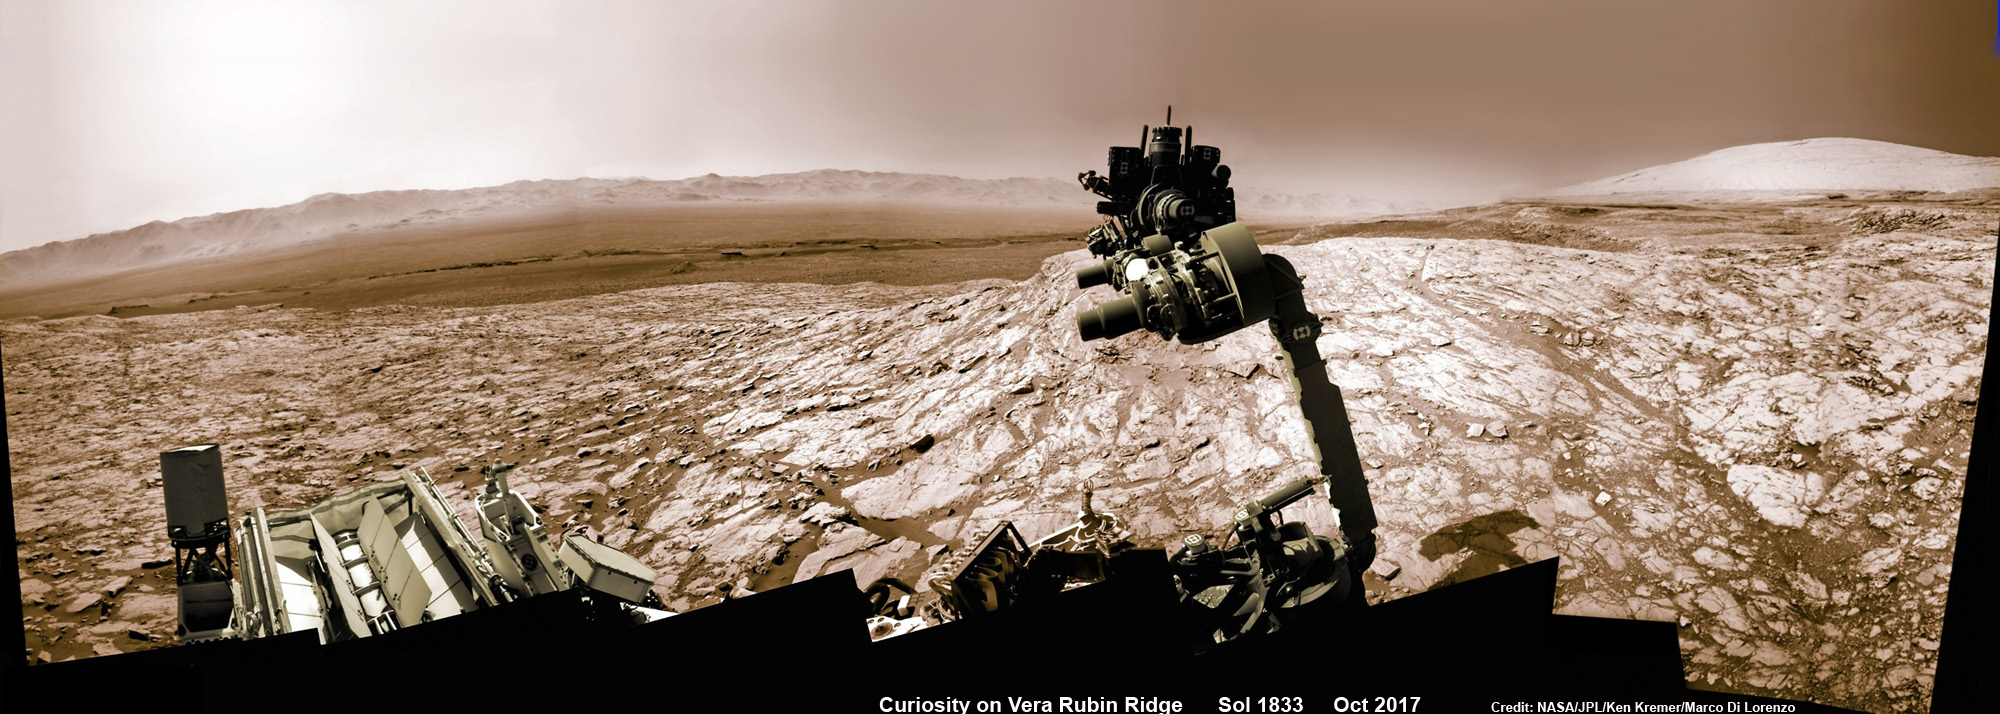  Марсоход НАСА Curiosity поднял роботизированную руку с буром, направленным в небо, во время исследования хребта Веры Рубин у основания горы Шарп в кратере Гейл — на фоне далёкого кратера. Эта мозаика, сделанная камерой navcam, была сшита из необработанных изображений, полученных во время сол 1833, 2 октября 2017 года, и раскрашена.